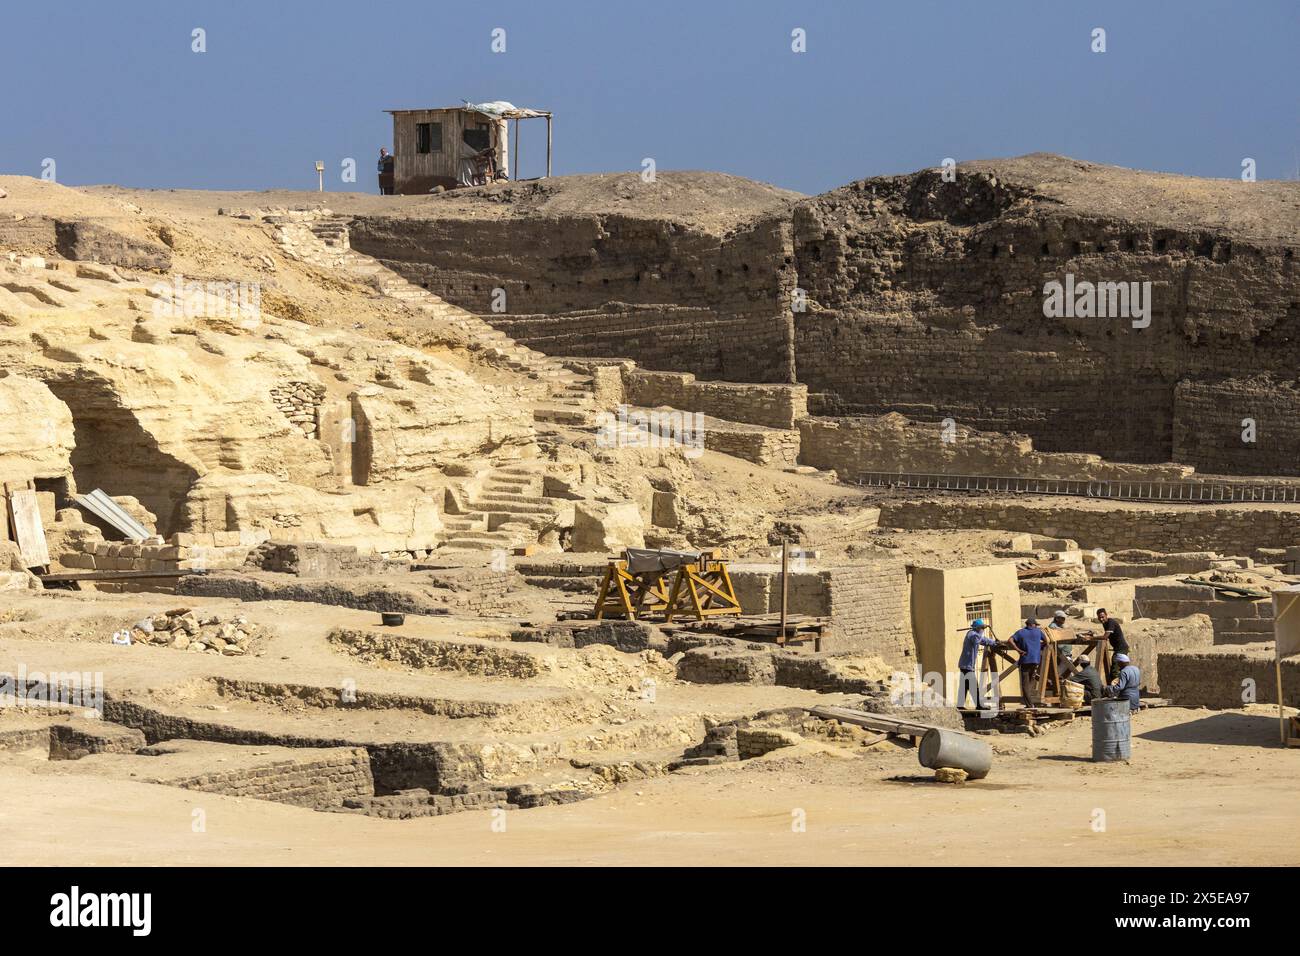 Archäologische Stätte in Gizeh, Ägypten, Afrika. Die umliegenden Bereiche der Pyramiden werden noch ausgegraben. Arbeiter um eine Bodenwinde herum. Stockfoto